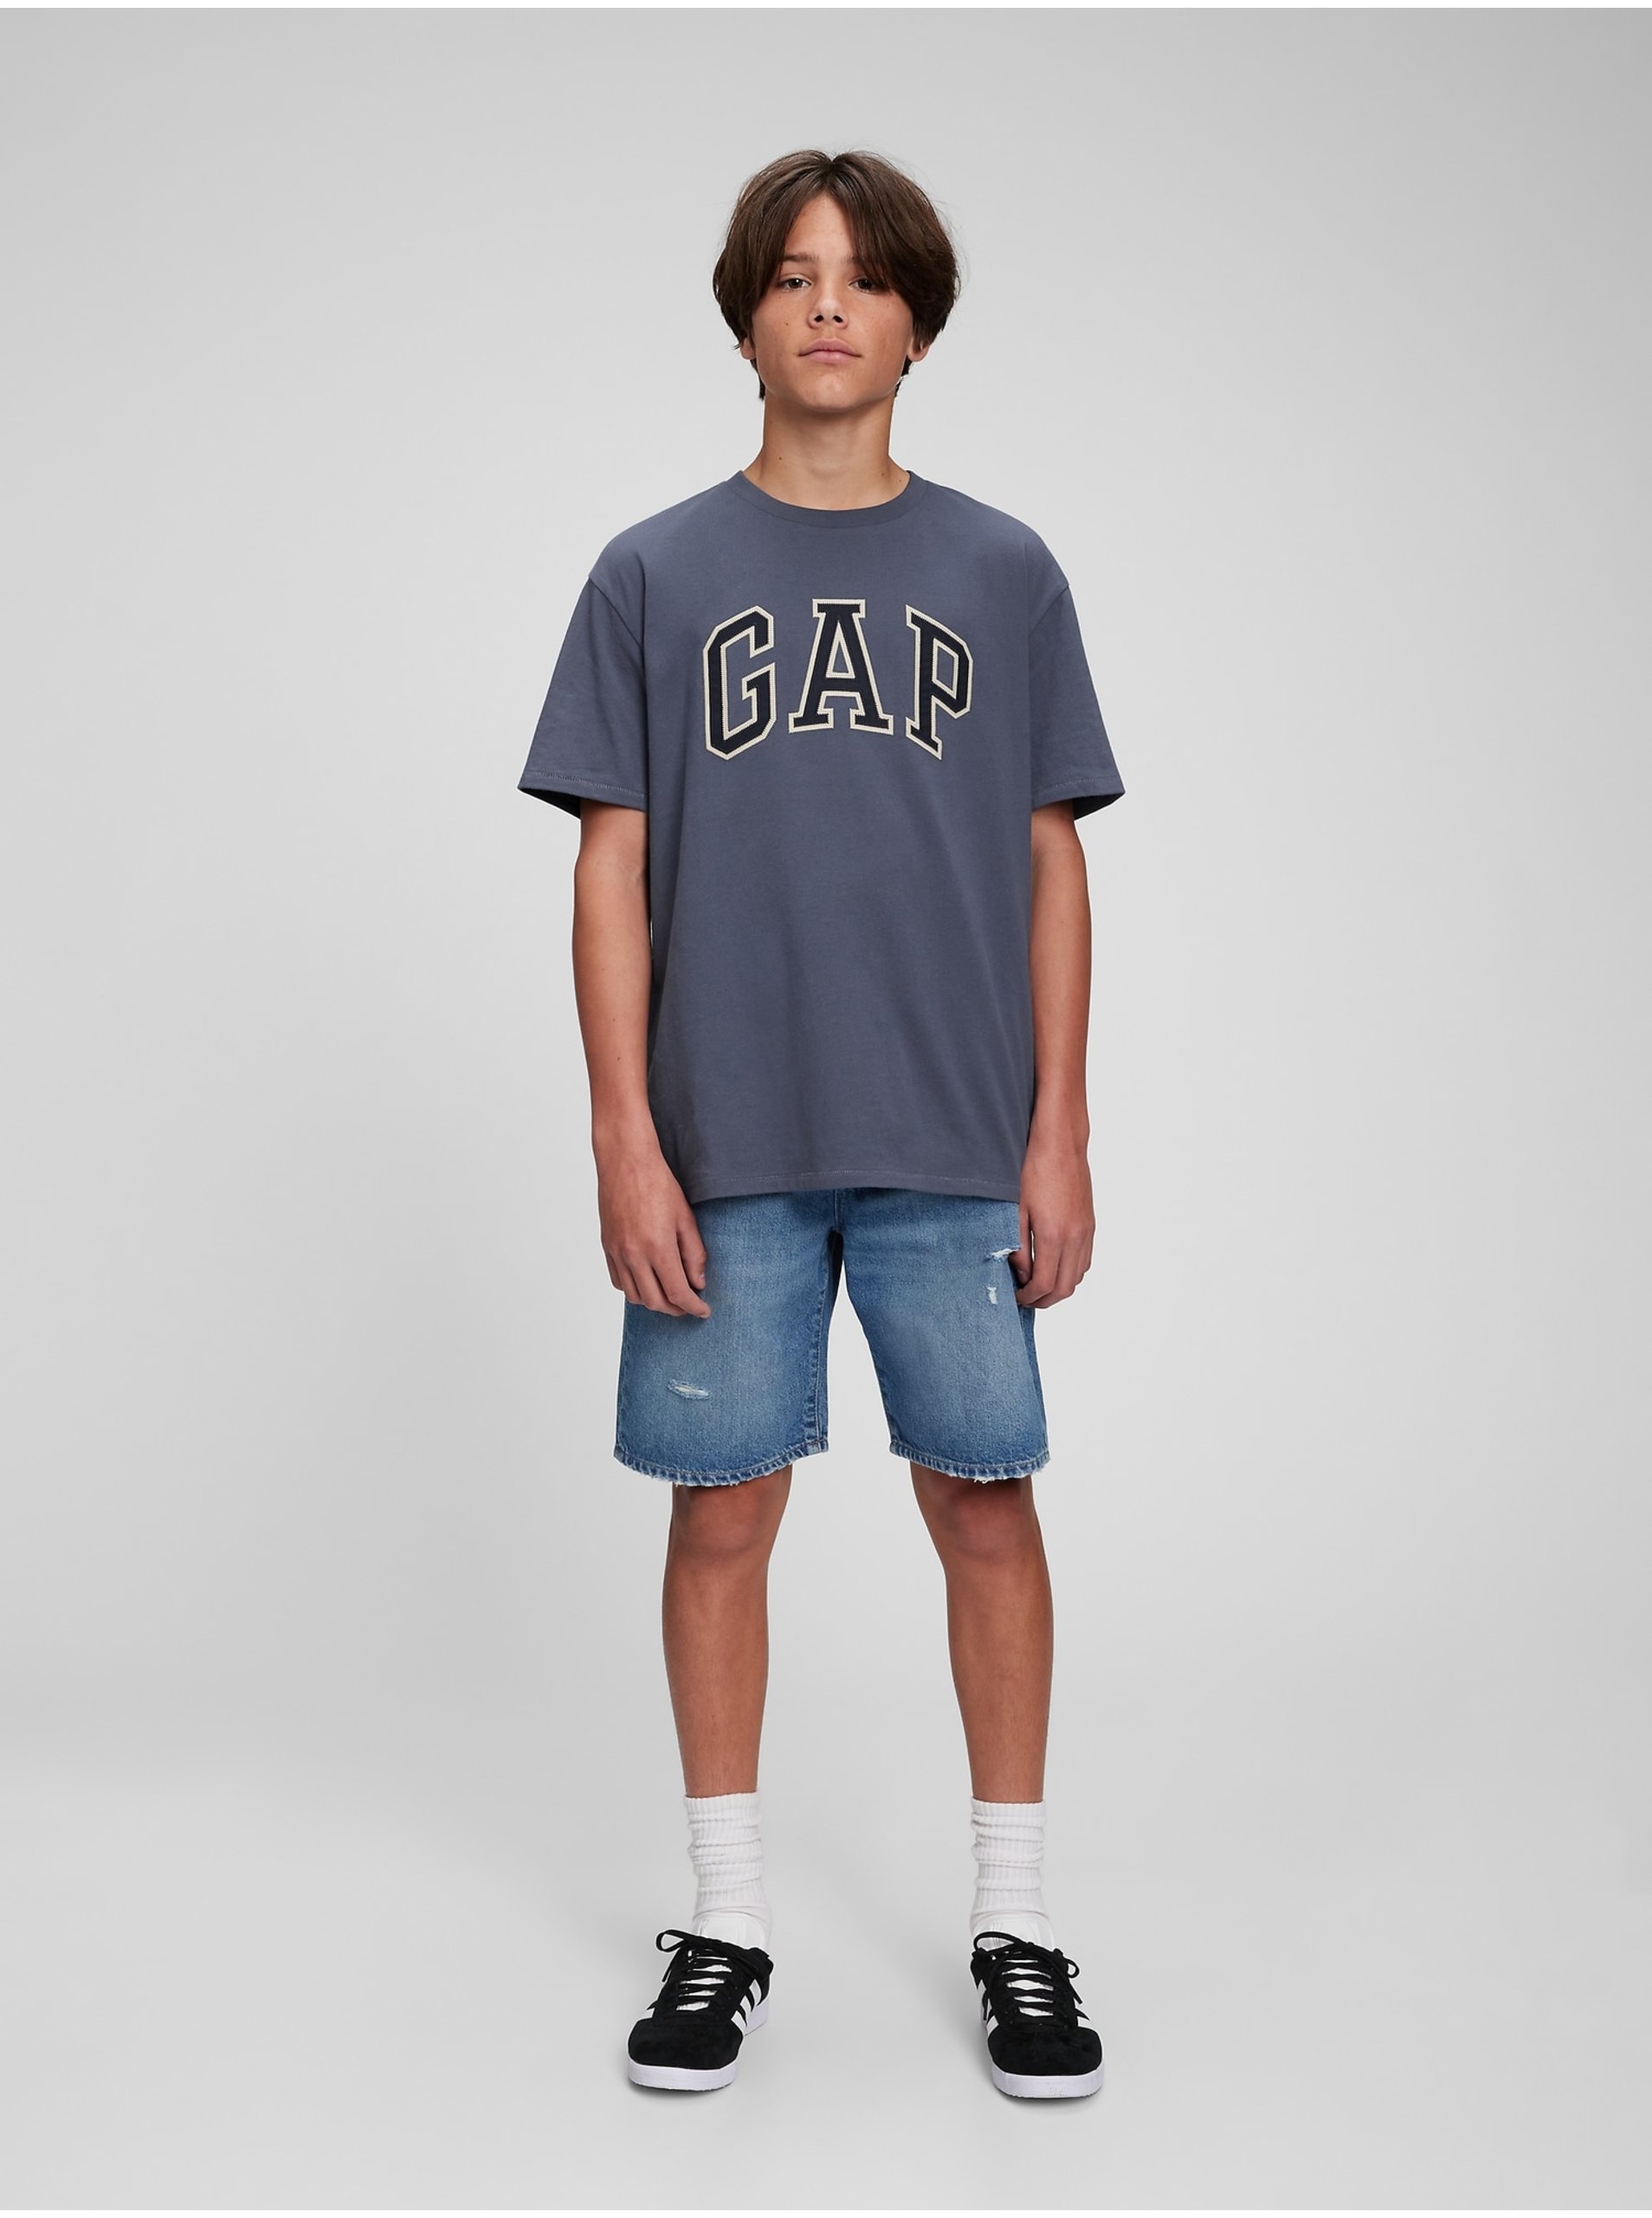 E-shop Modré klučičí tričko Teen organic logo GAP GAP